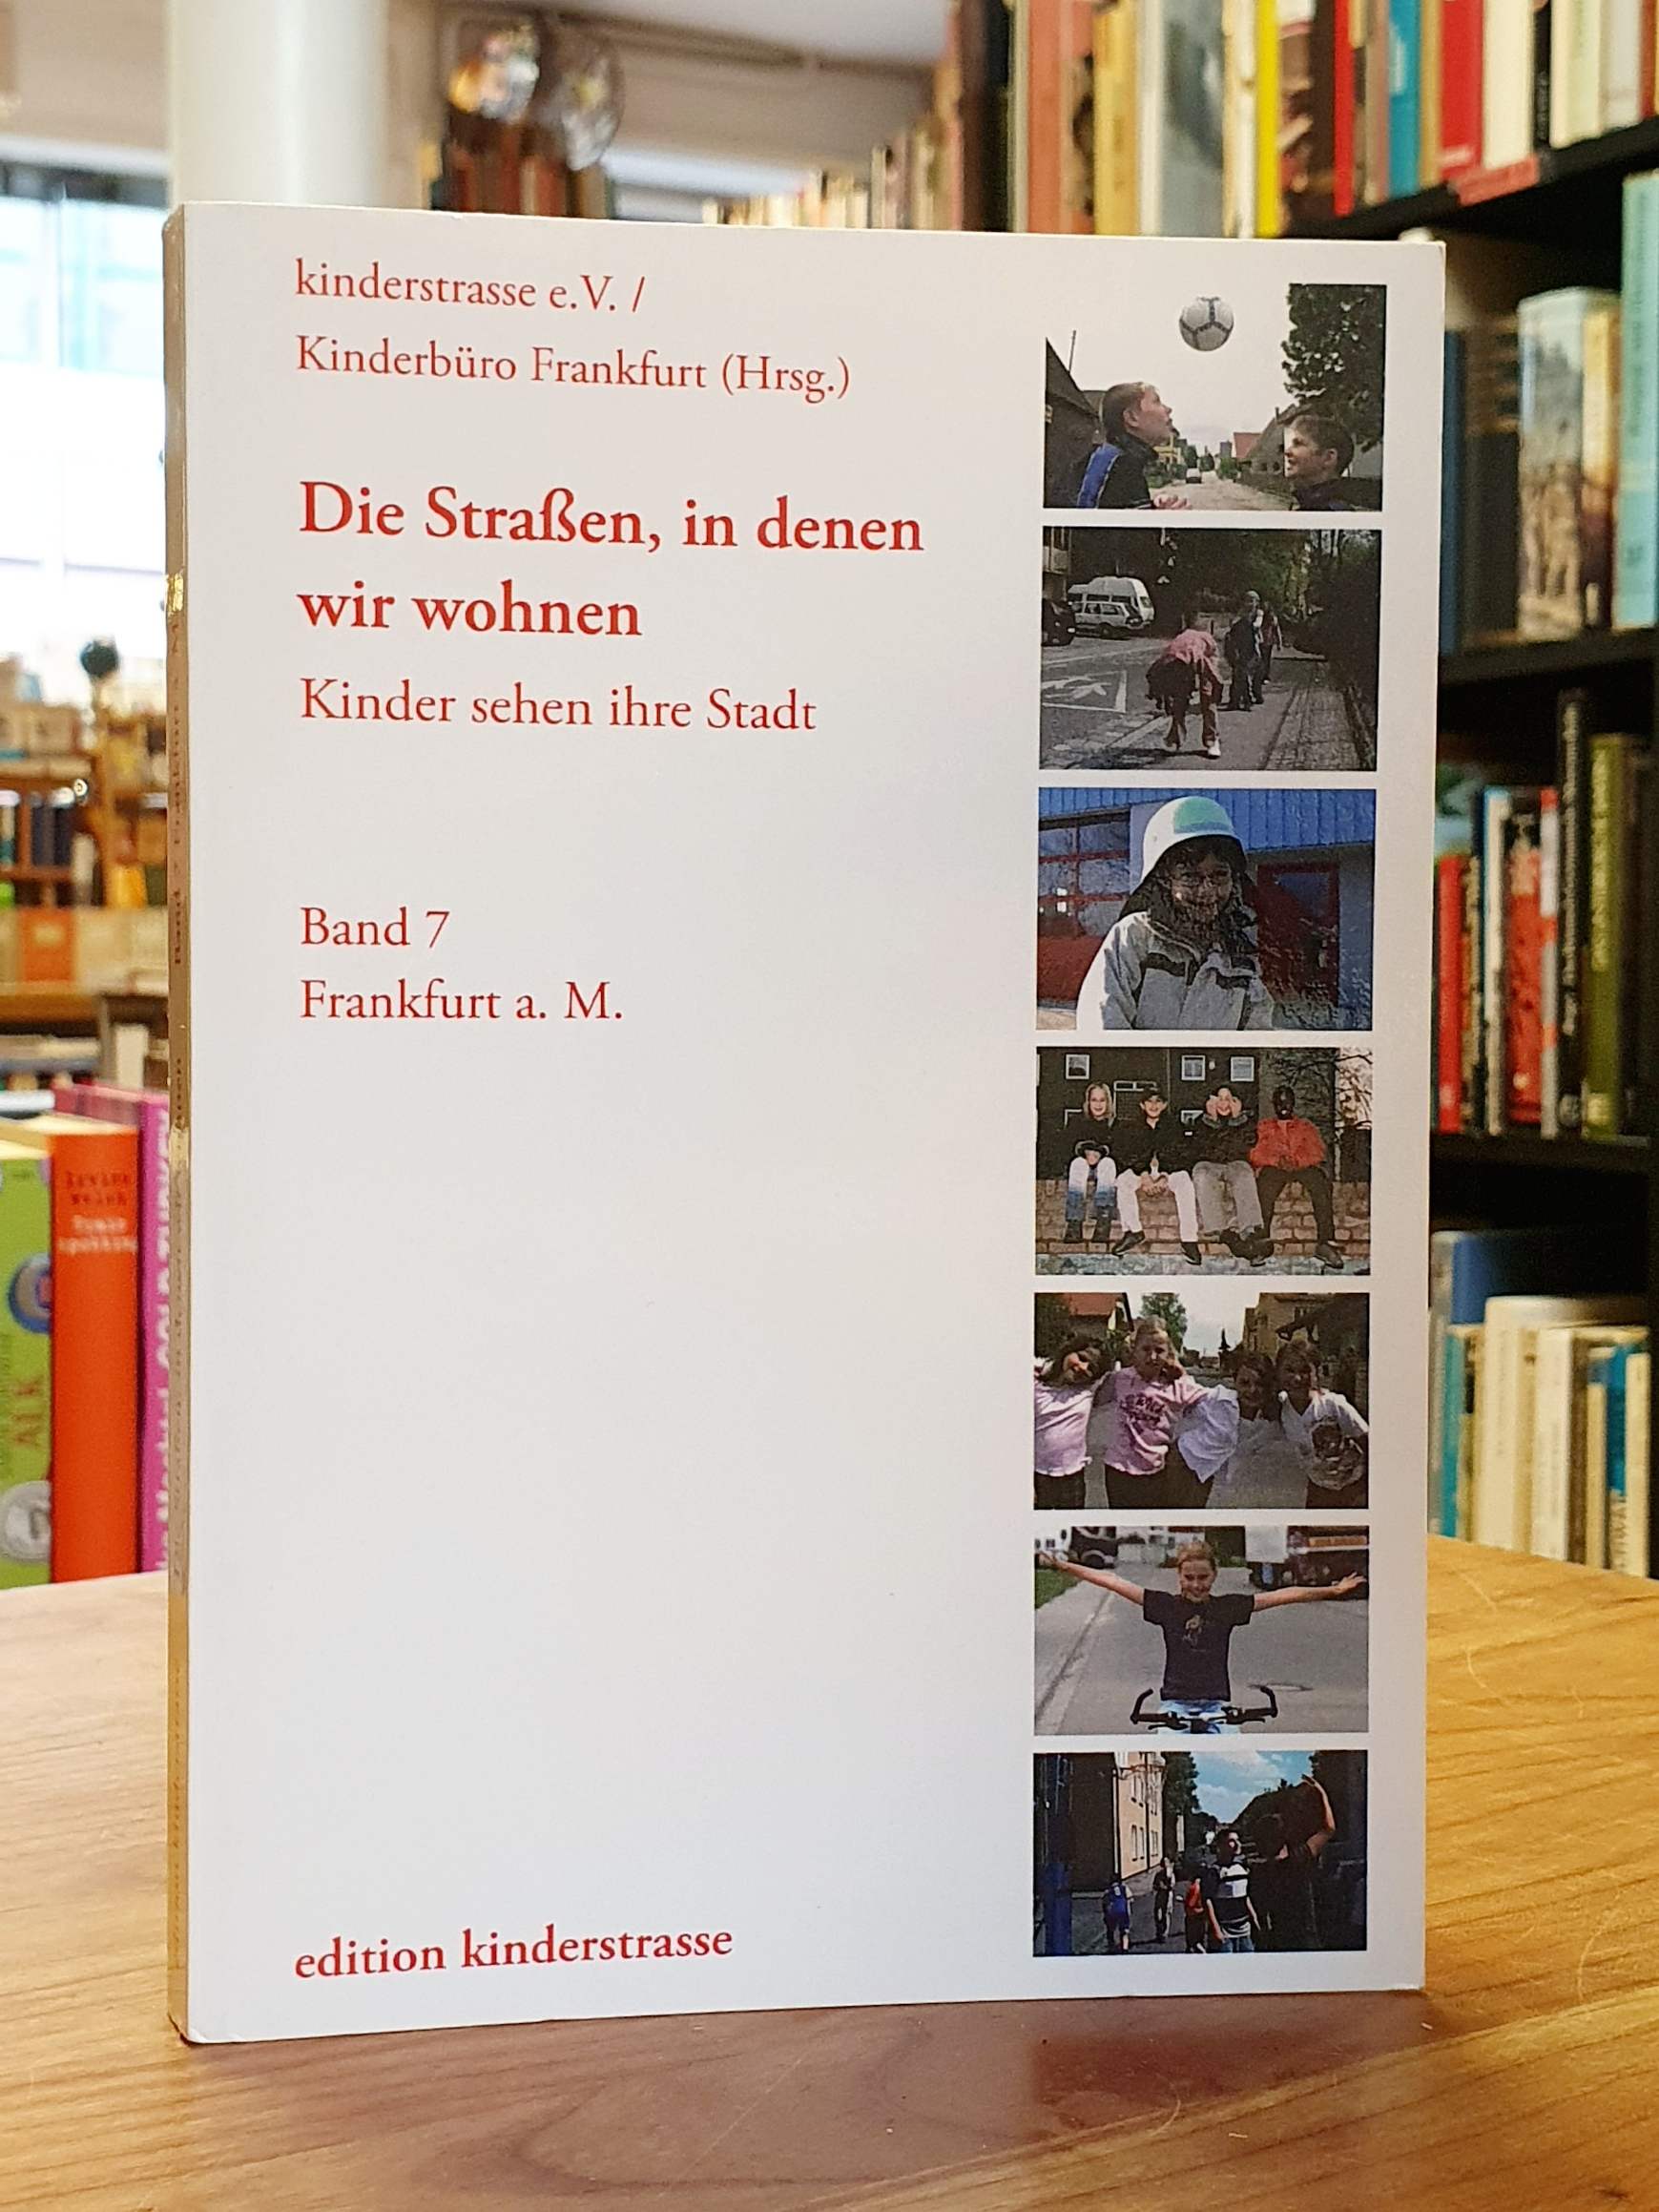 kinderstrasse e.v./ Kinderbüro Frankfurt (Hrsg.), Die Straßen, in denen wir wohn